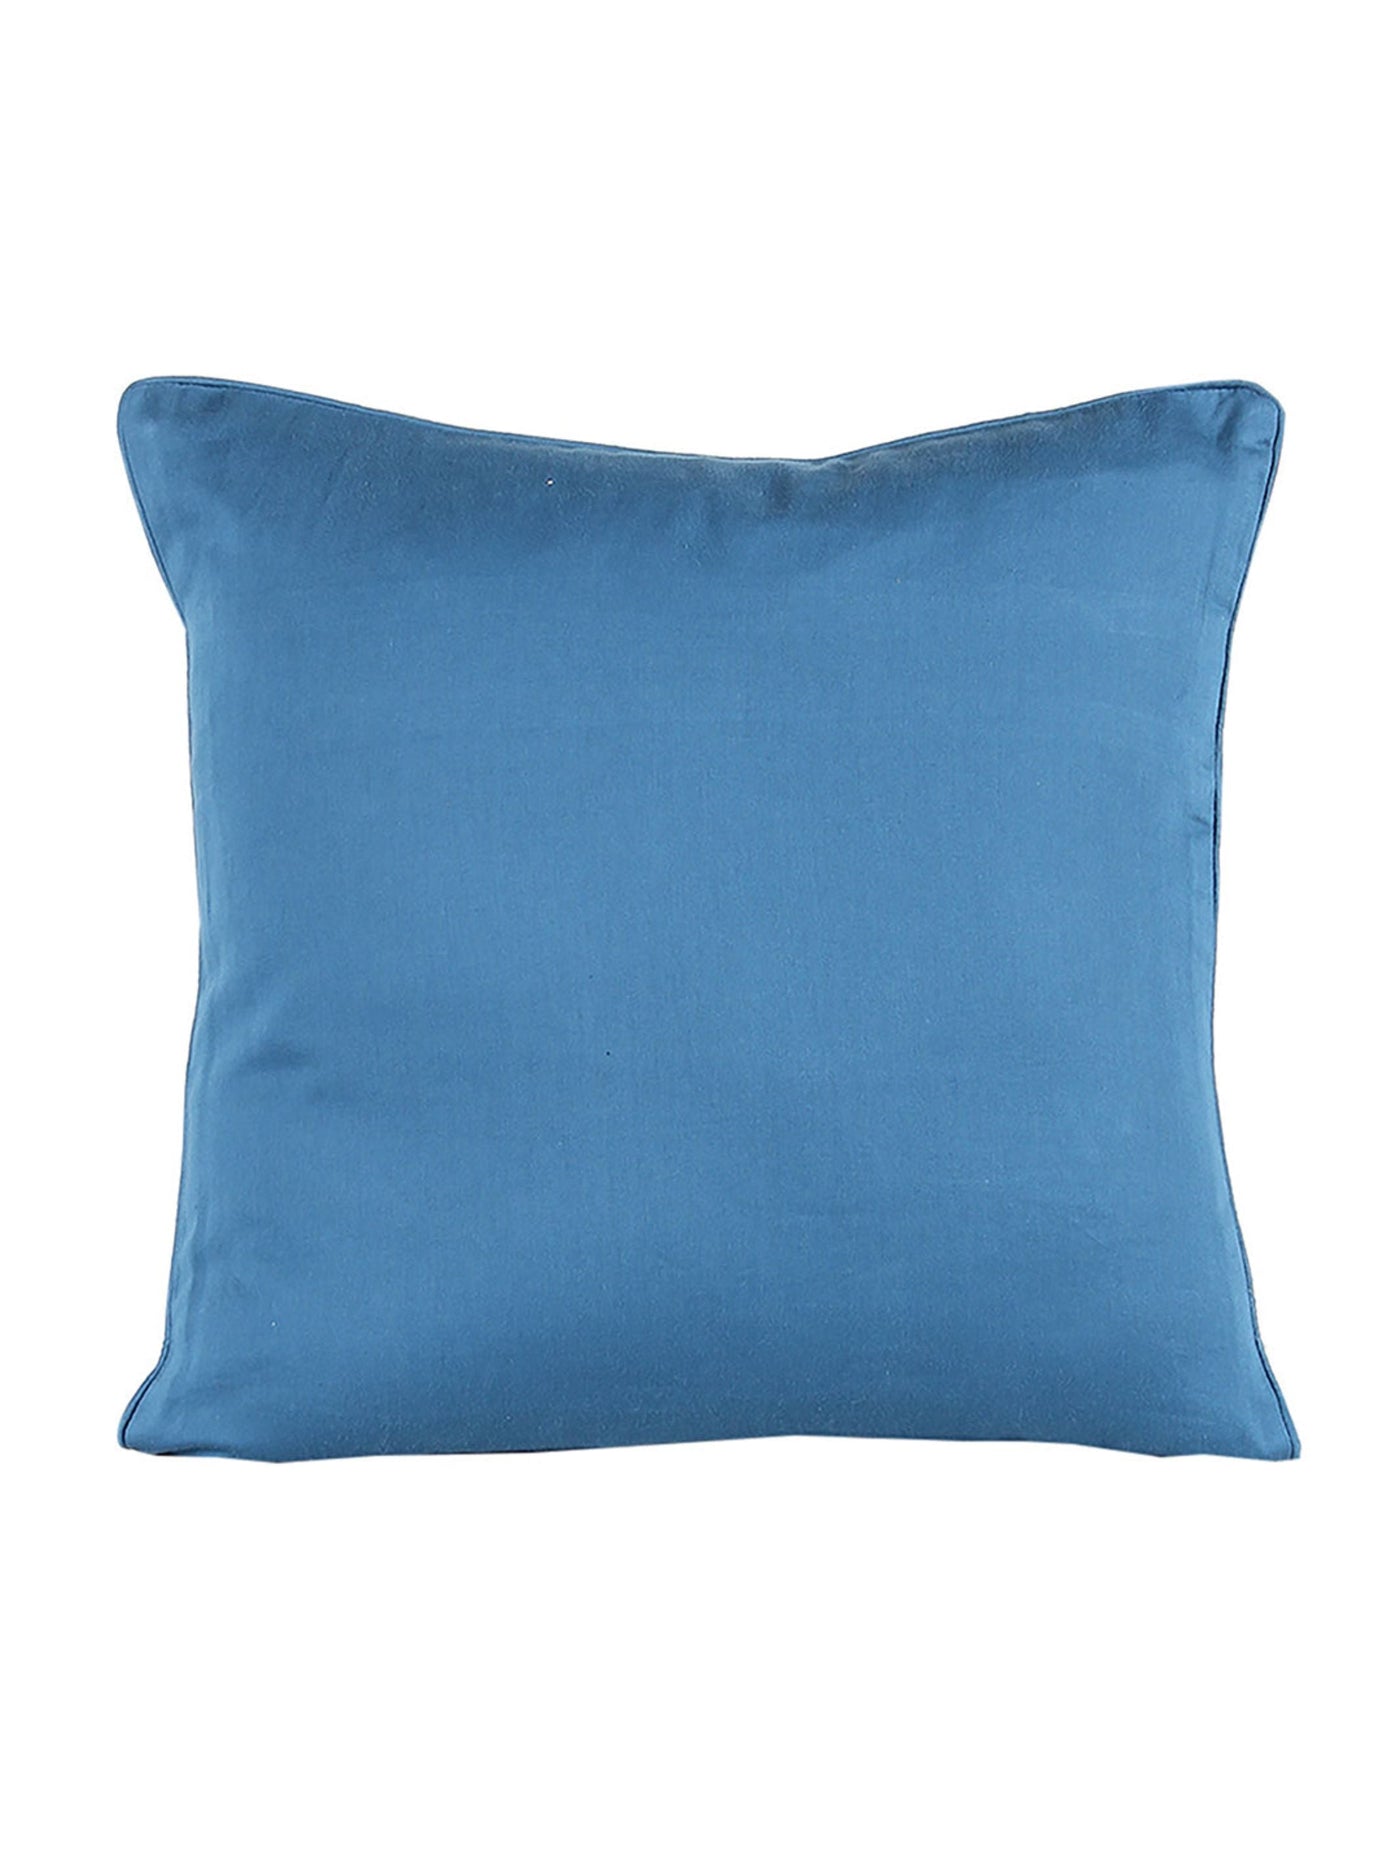 Rangrag Cushion Cover (Blue)